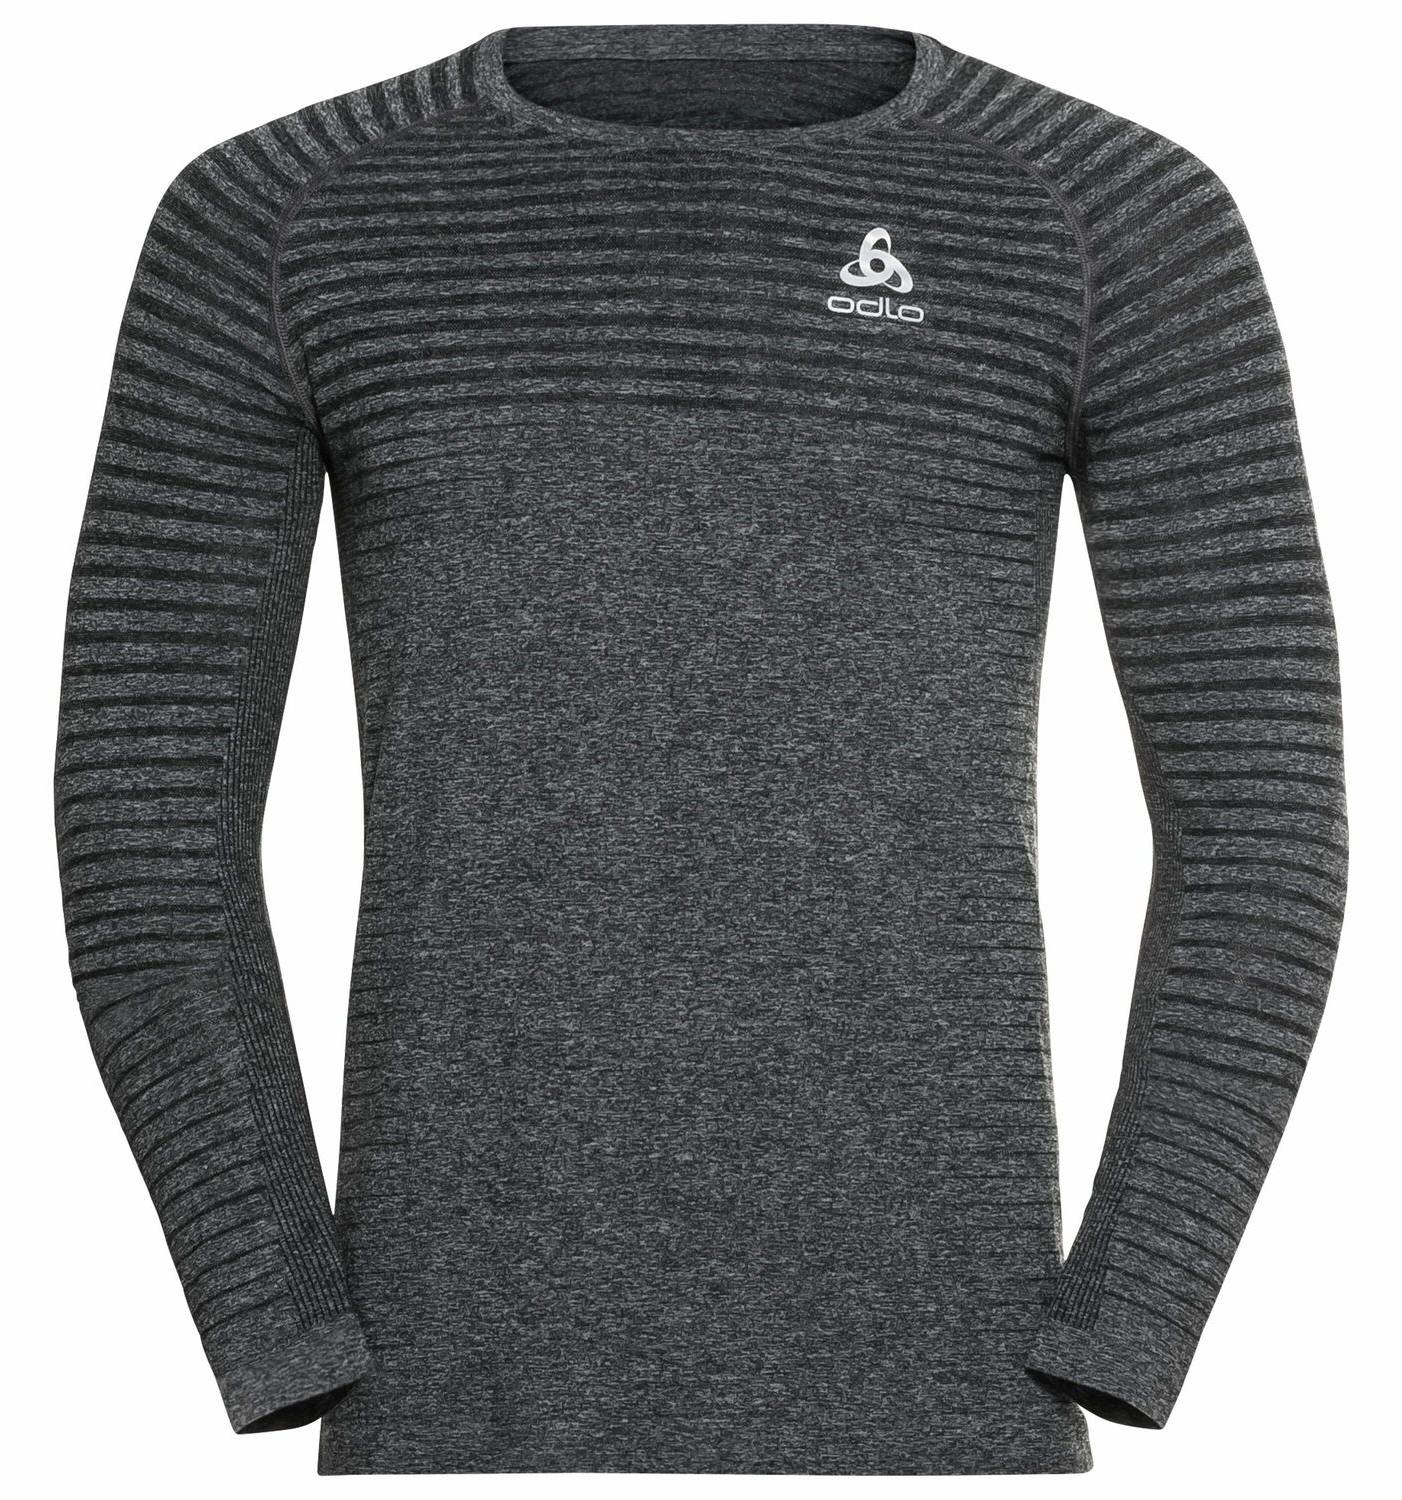 Odlo Men’s Essential Seamless Long-Sleeve Running Shirt